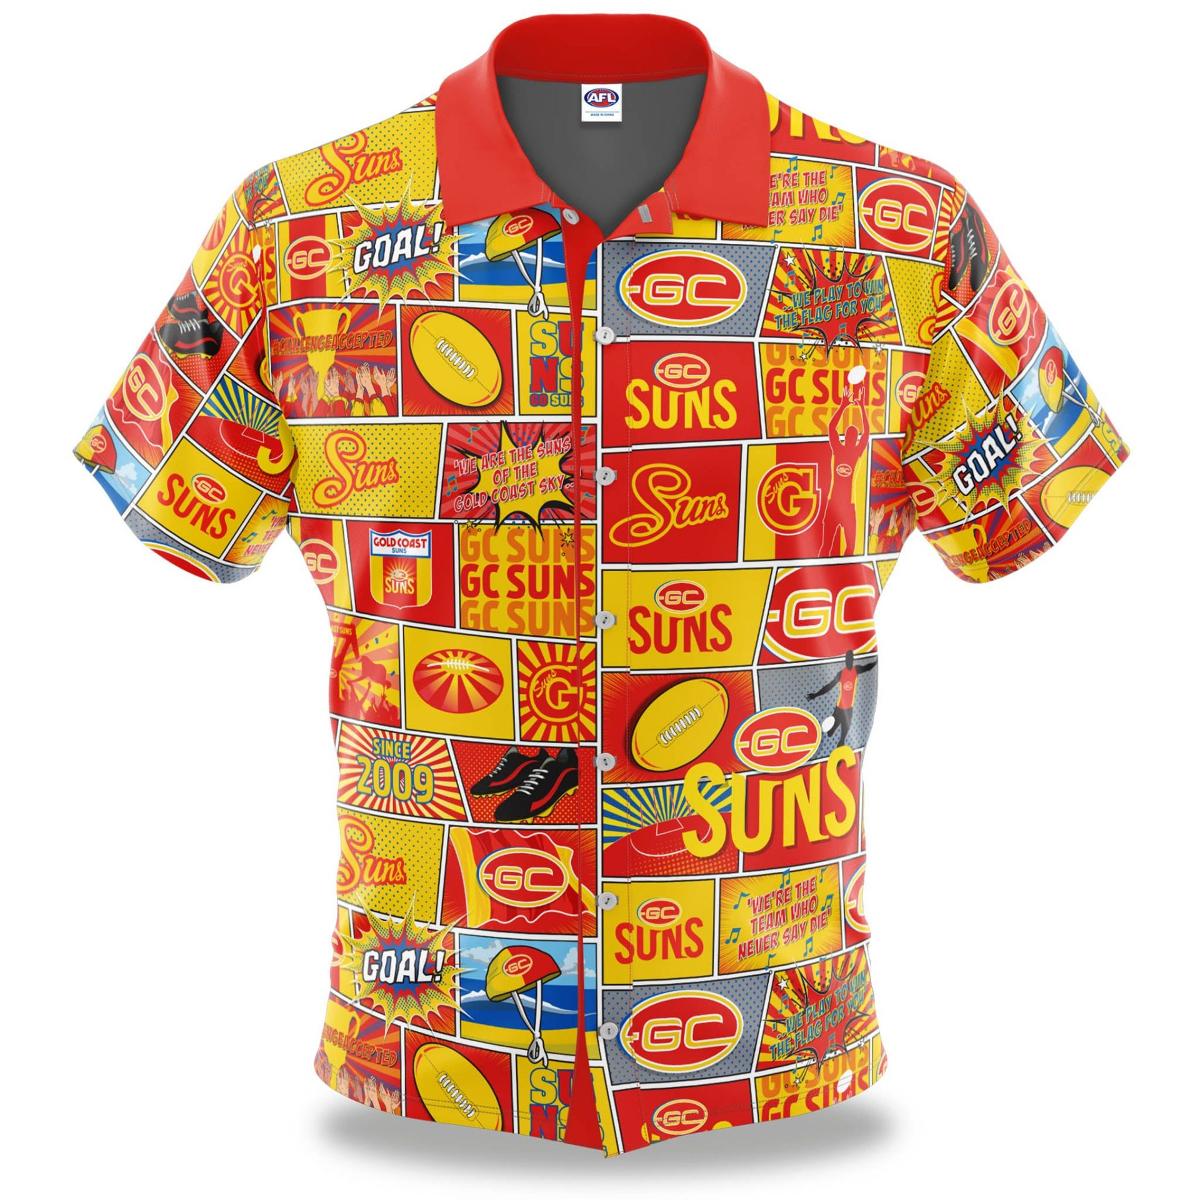 Afl Gold Coast Suns Football Team Since 2009 Vintage Hawaiian Shirt For Fans